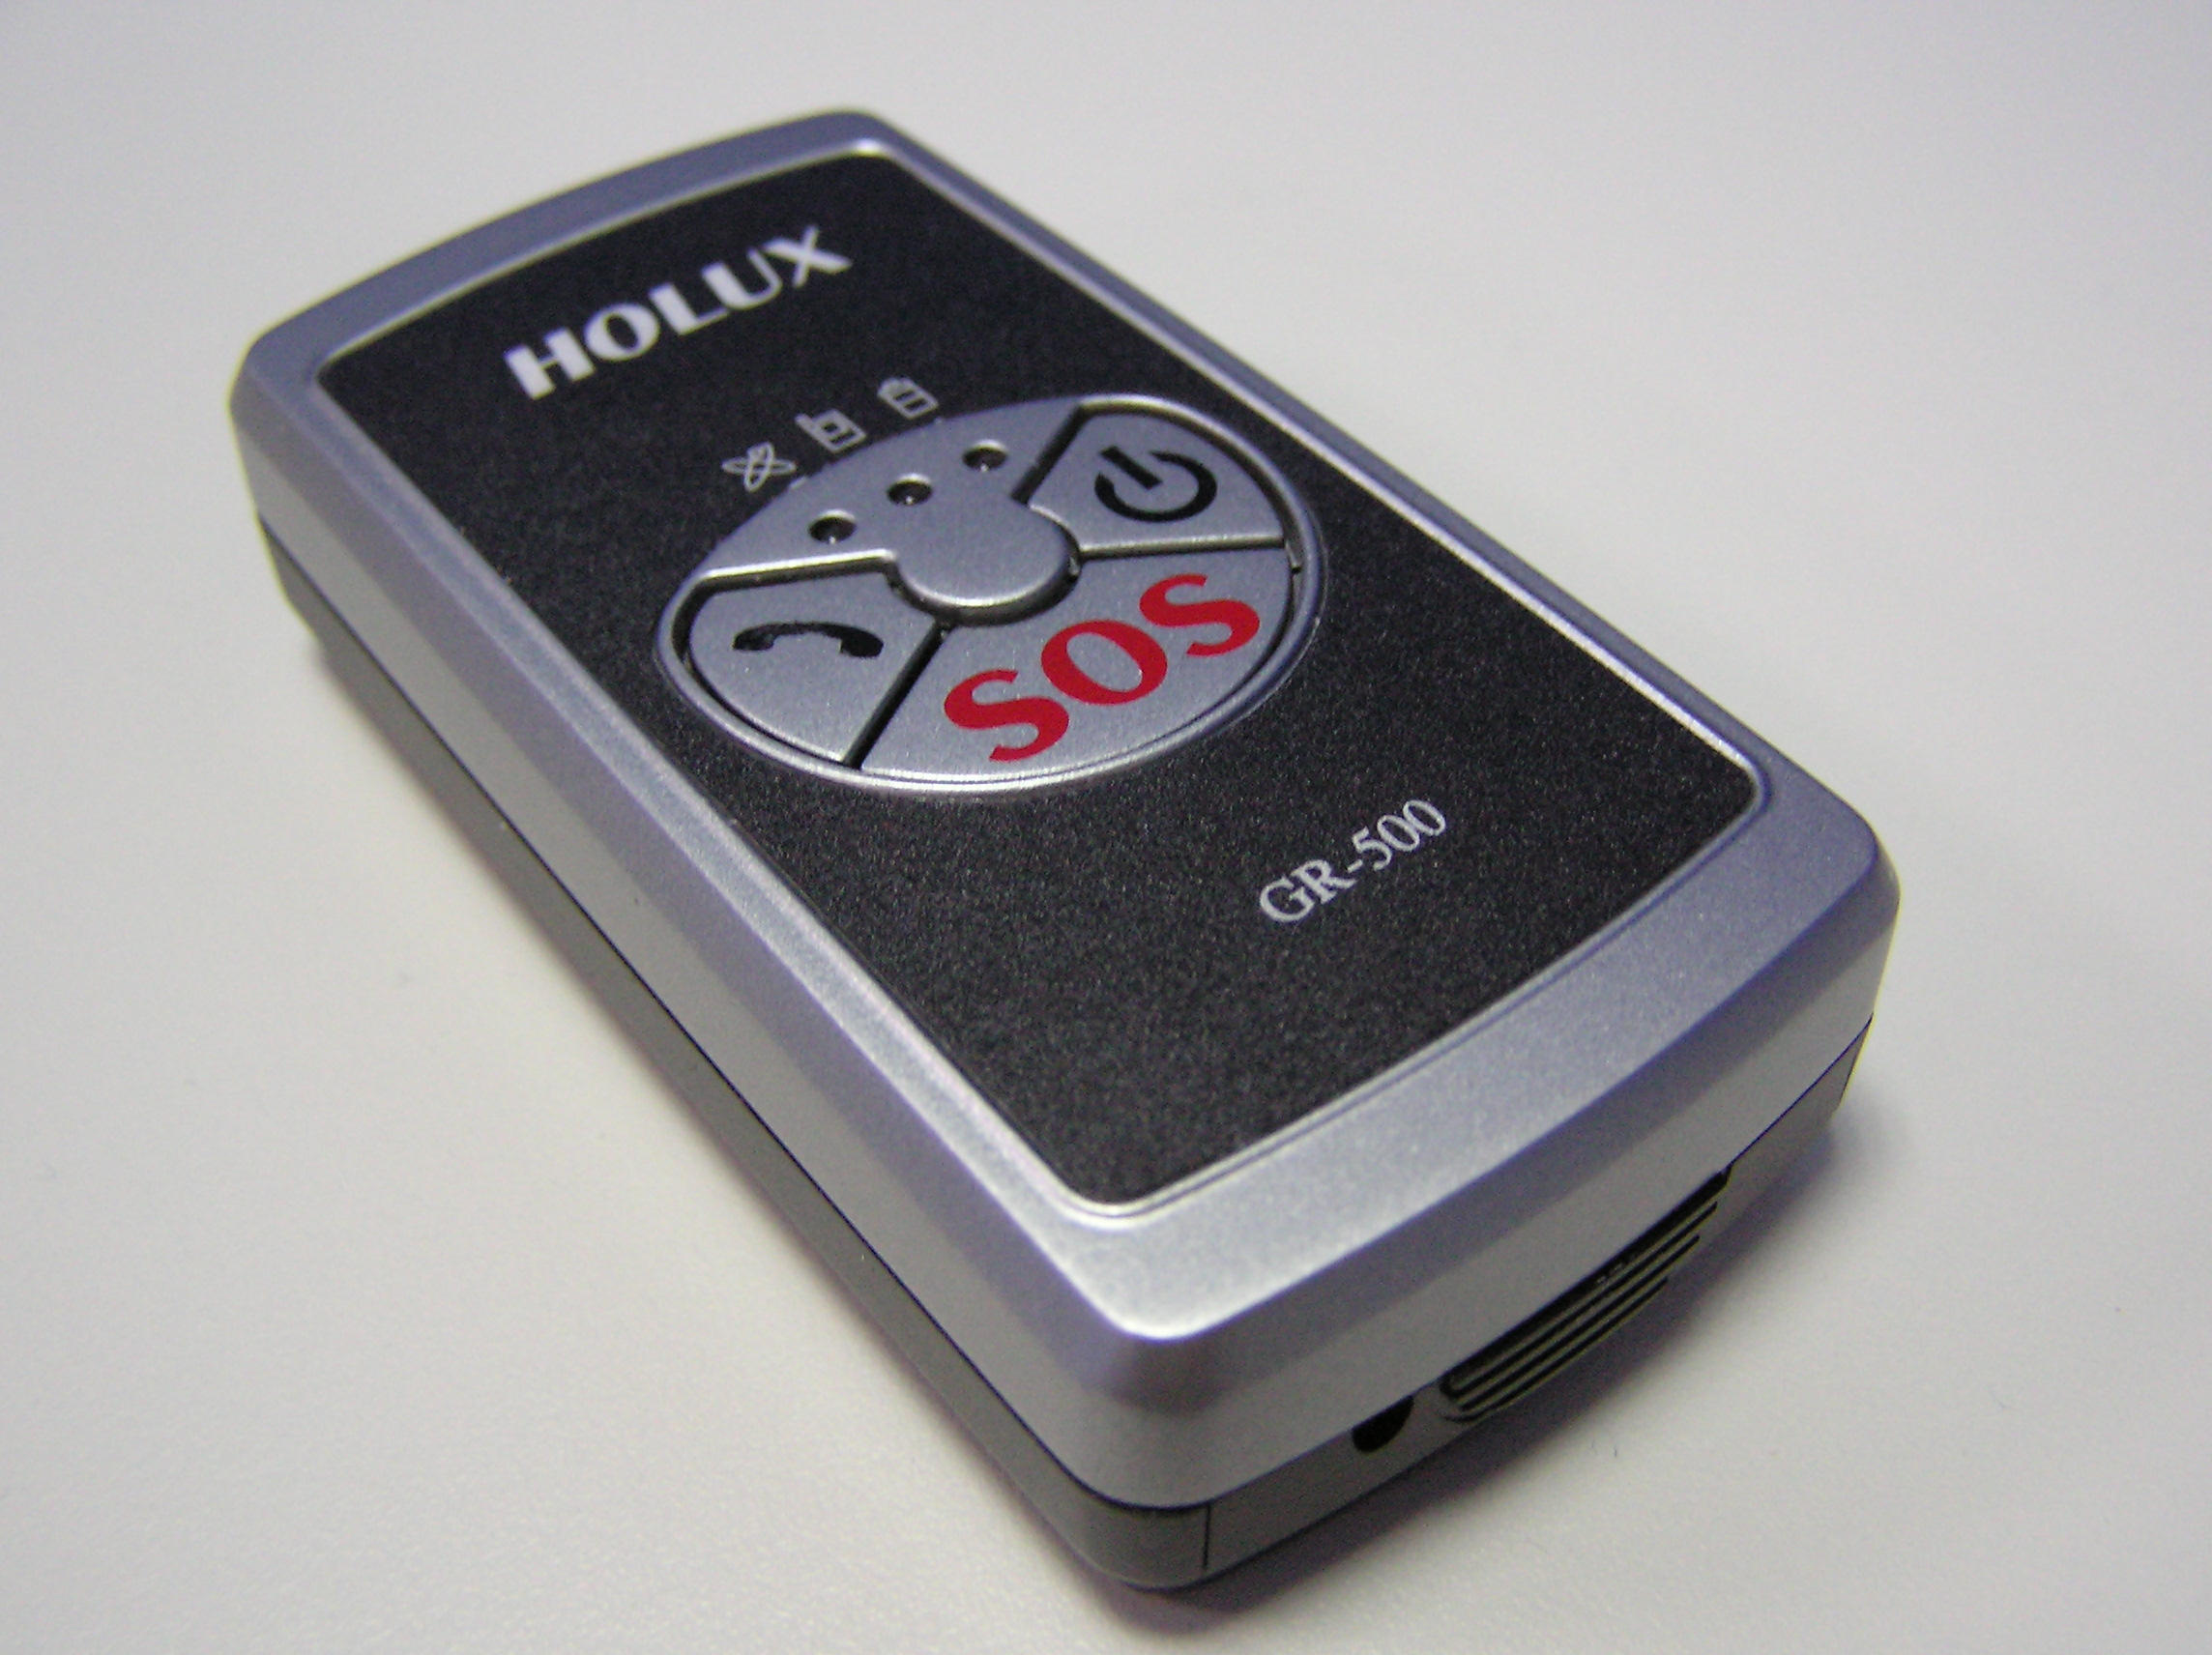 GR-500 Handheld GPS Tracker (GR-500 Handheld GPS Tracker)